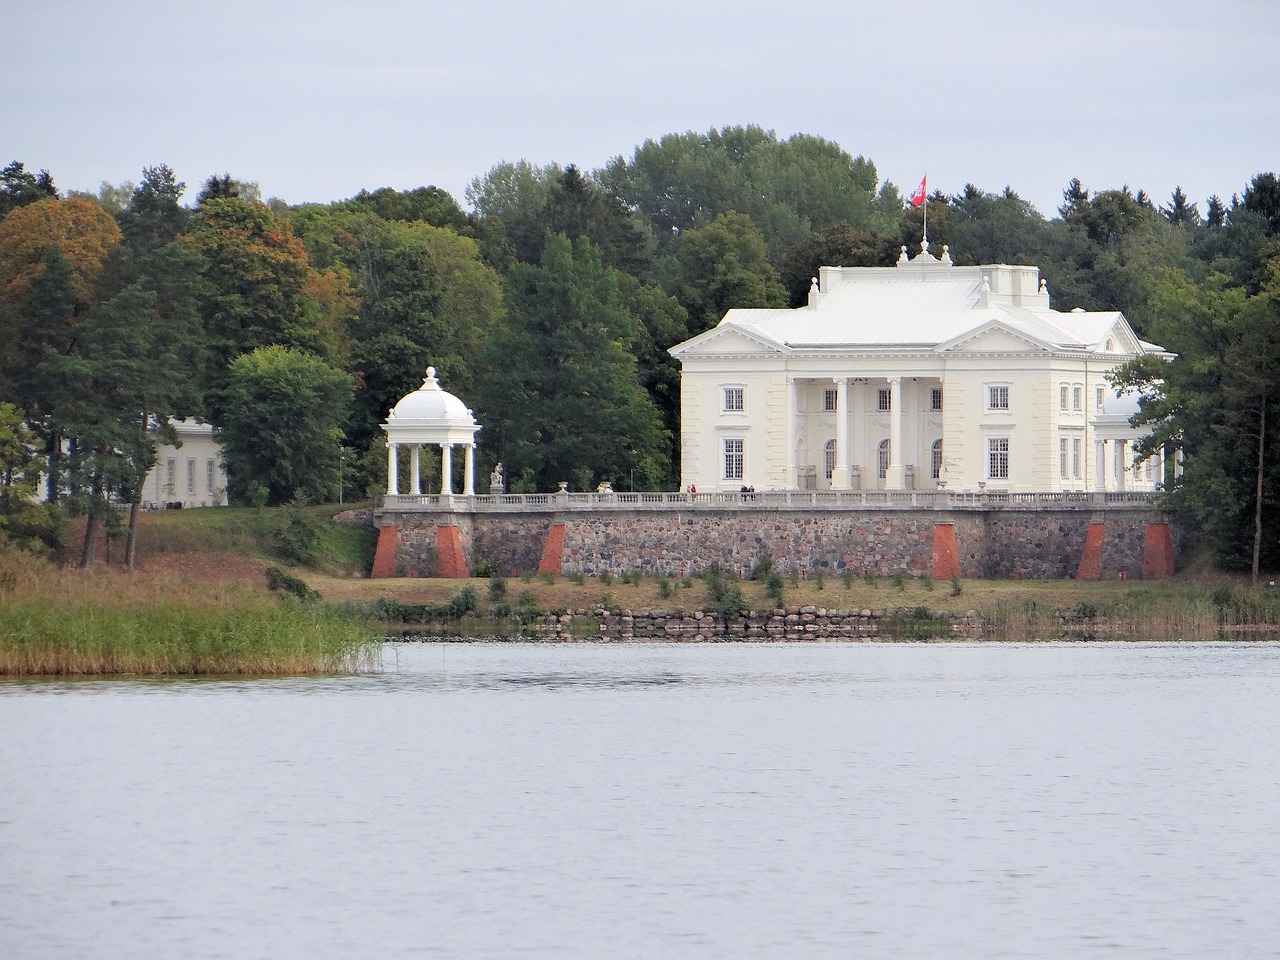 zatrocze the tyszkiewicz palace monument free photo